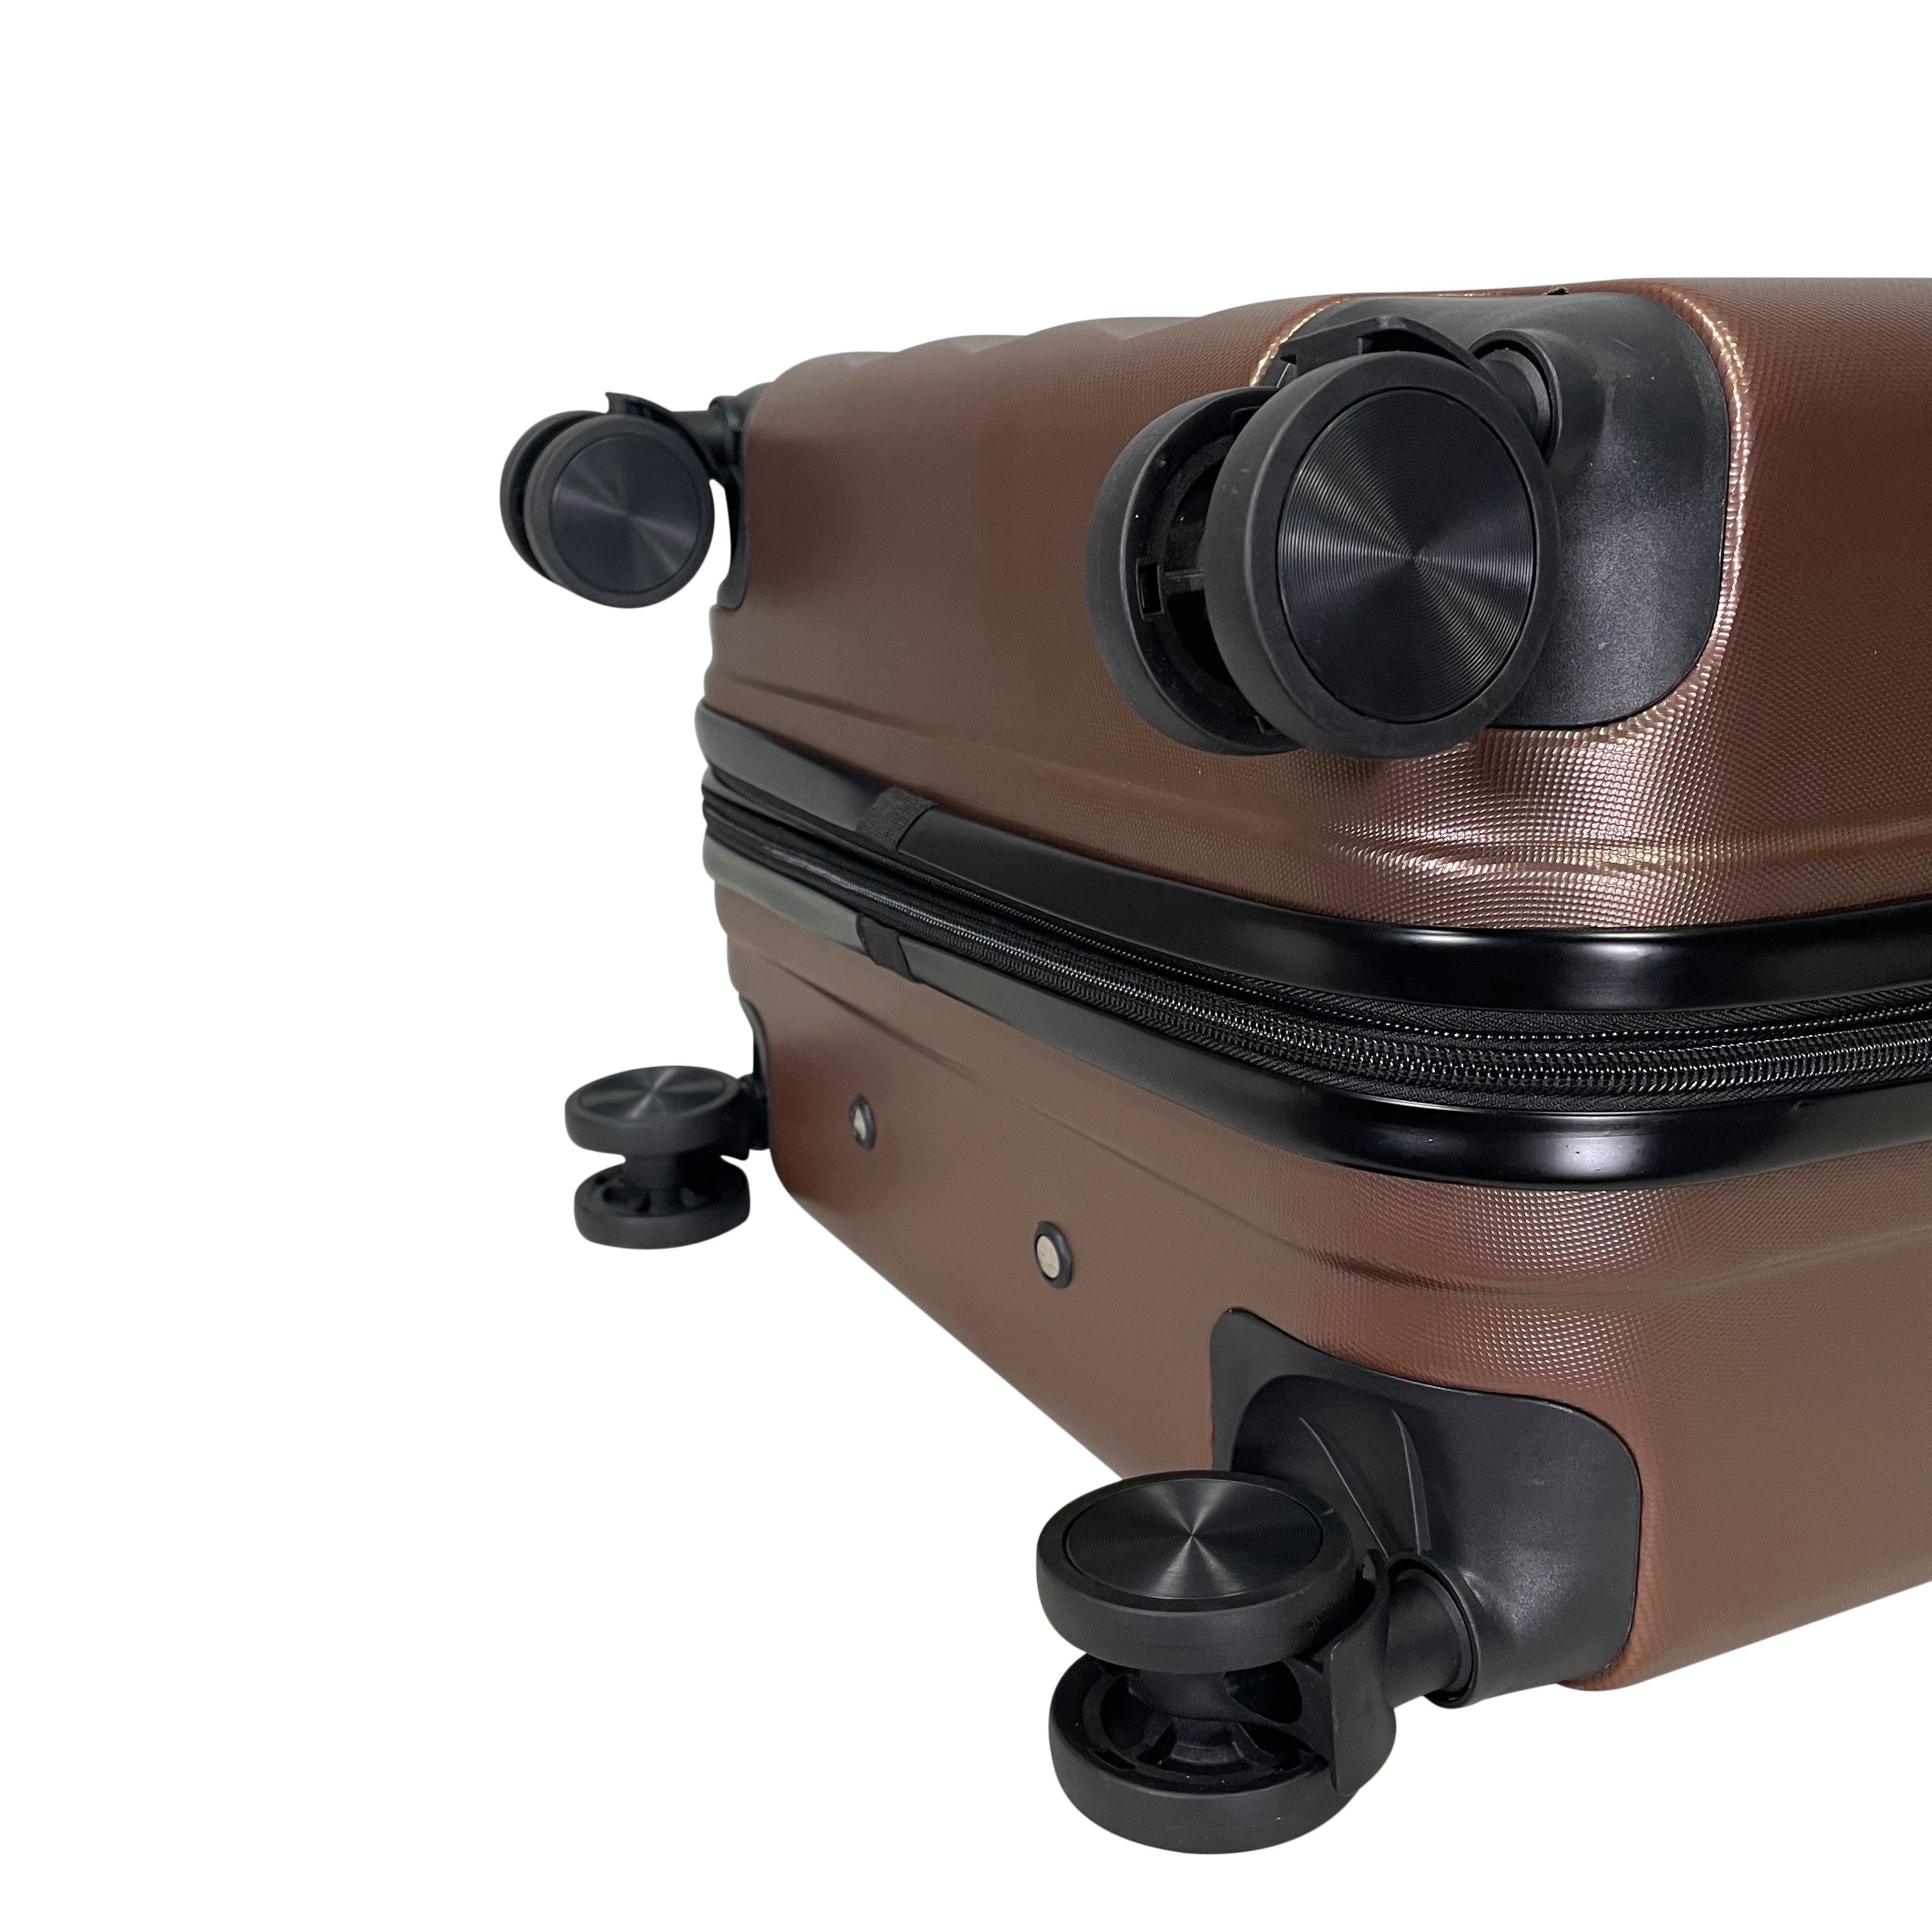 MTB Koffer Hartschalen ABS Reisekoffer erweiterbar Kaffee (Handgepäck-Mittel-Groß-Set)